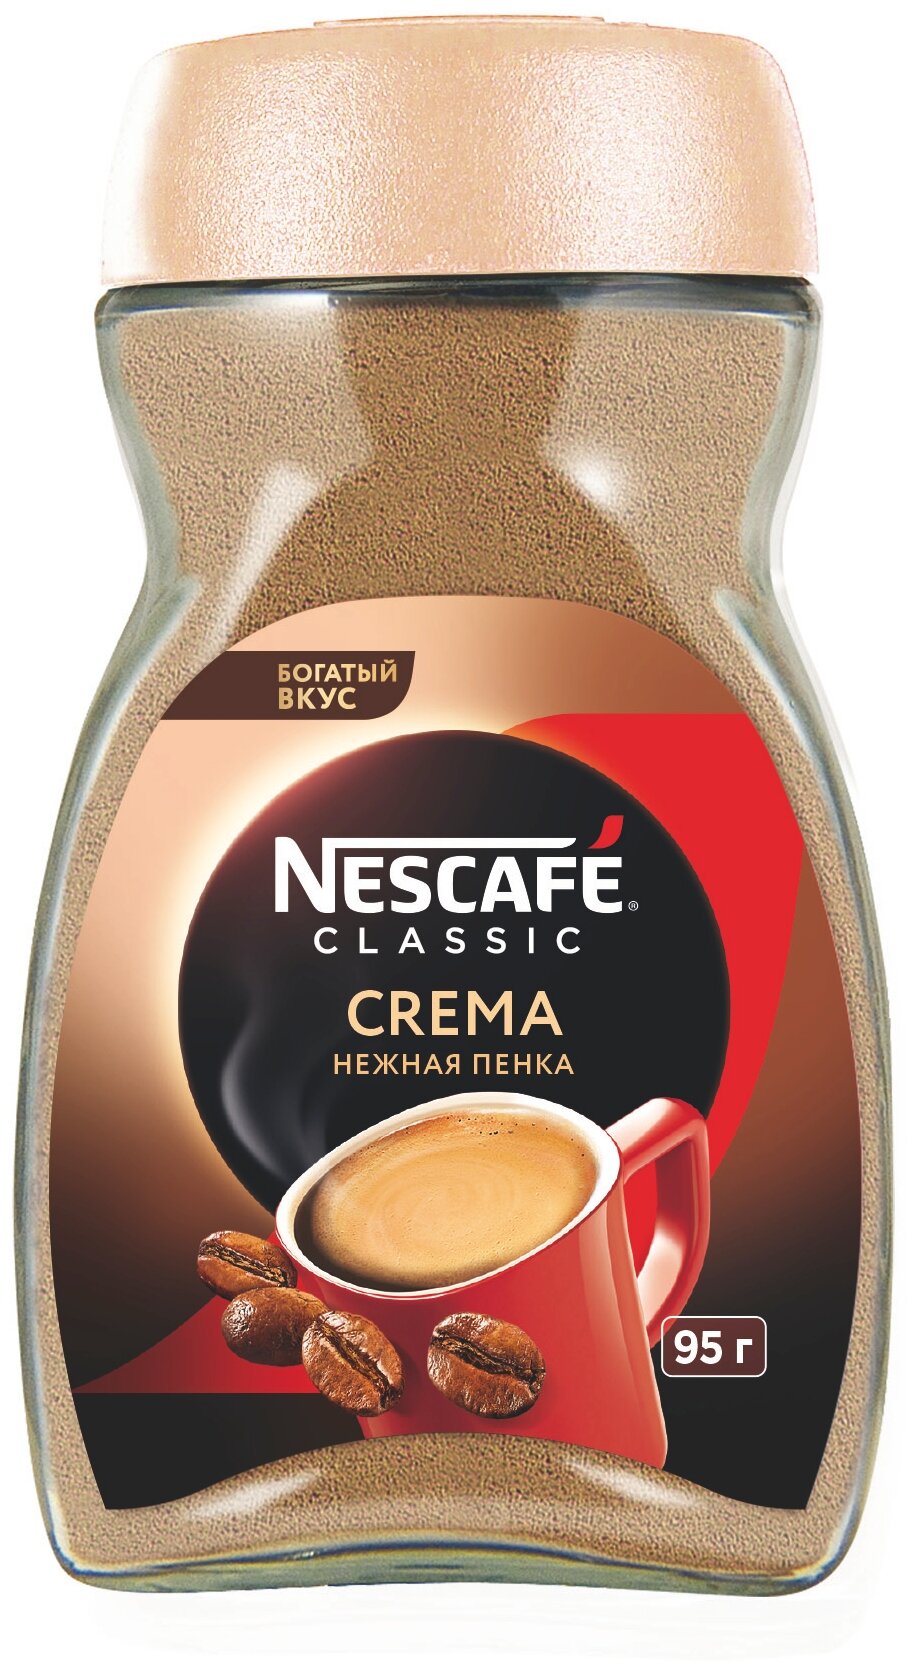 NESCAFE CLASSIC Crema Кофе натуральный растворимый порошкообразный 95 г